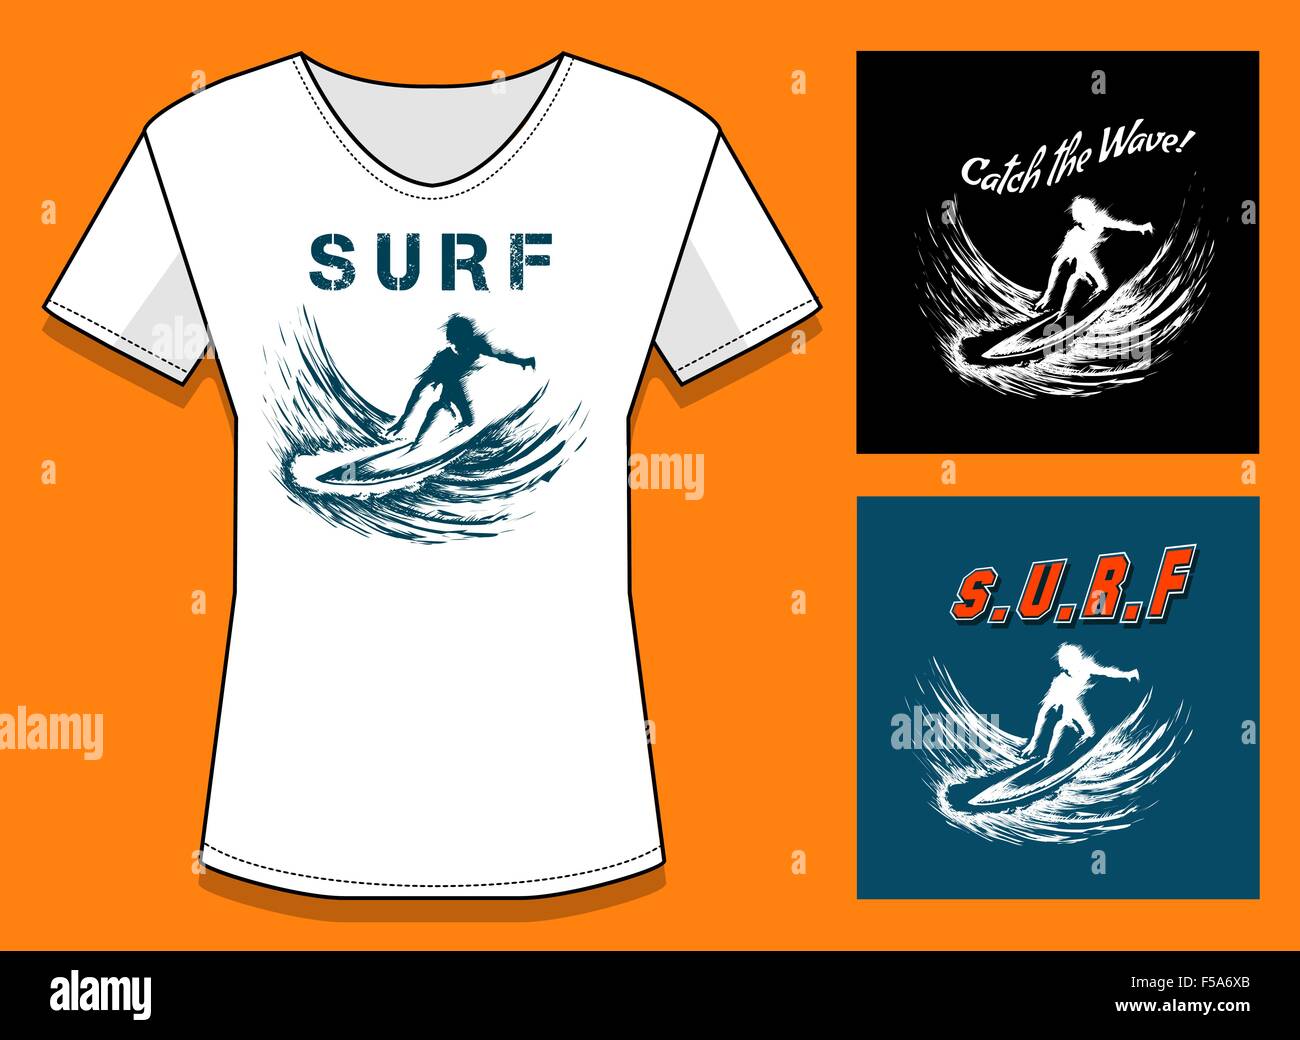 T-Shirt Stampa in tre varianti di colore. Surf Design Stampa con campioni di testo. Gratuito solo font utilizzato. Illustrazione Vettoriale